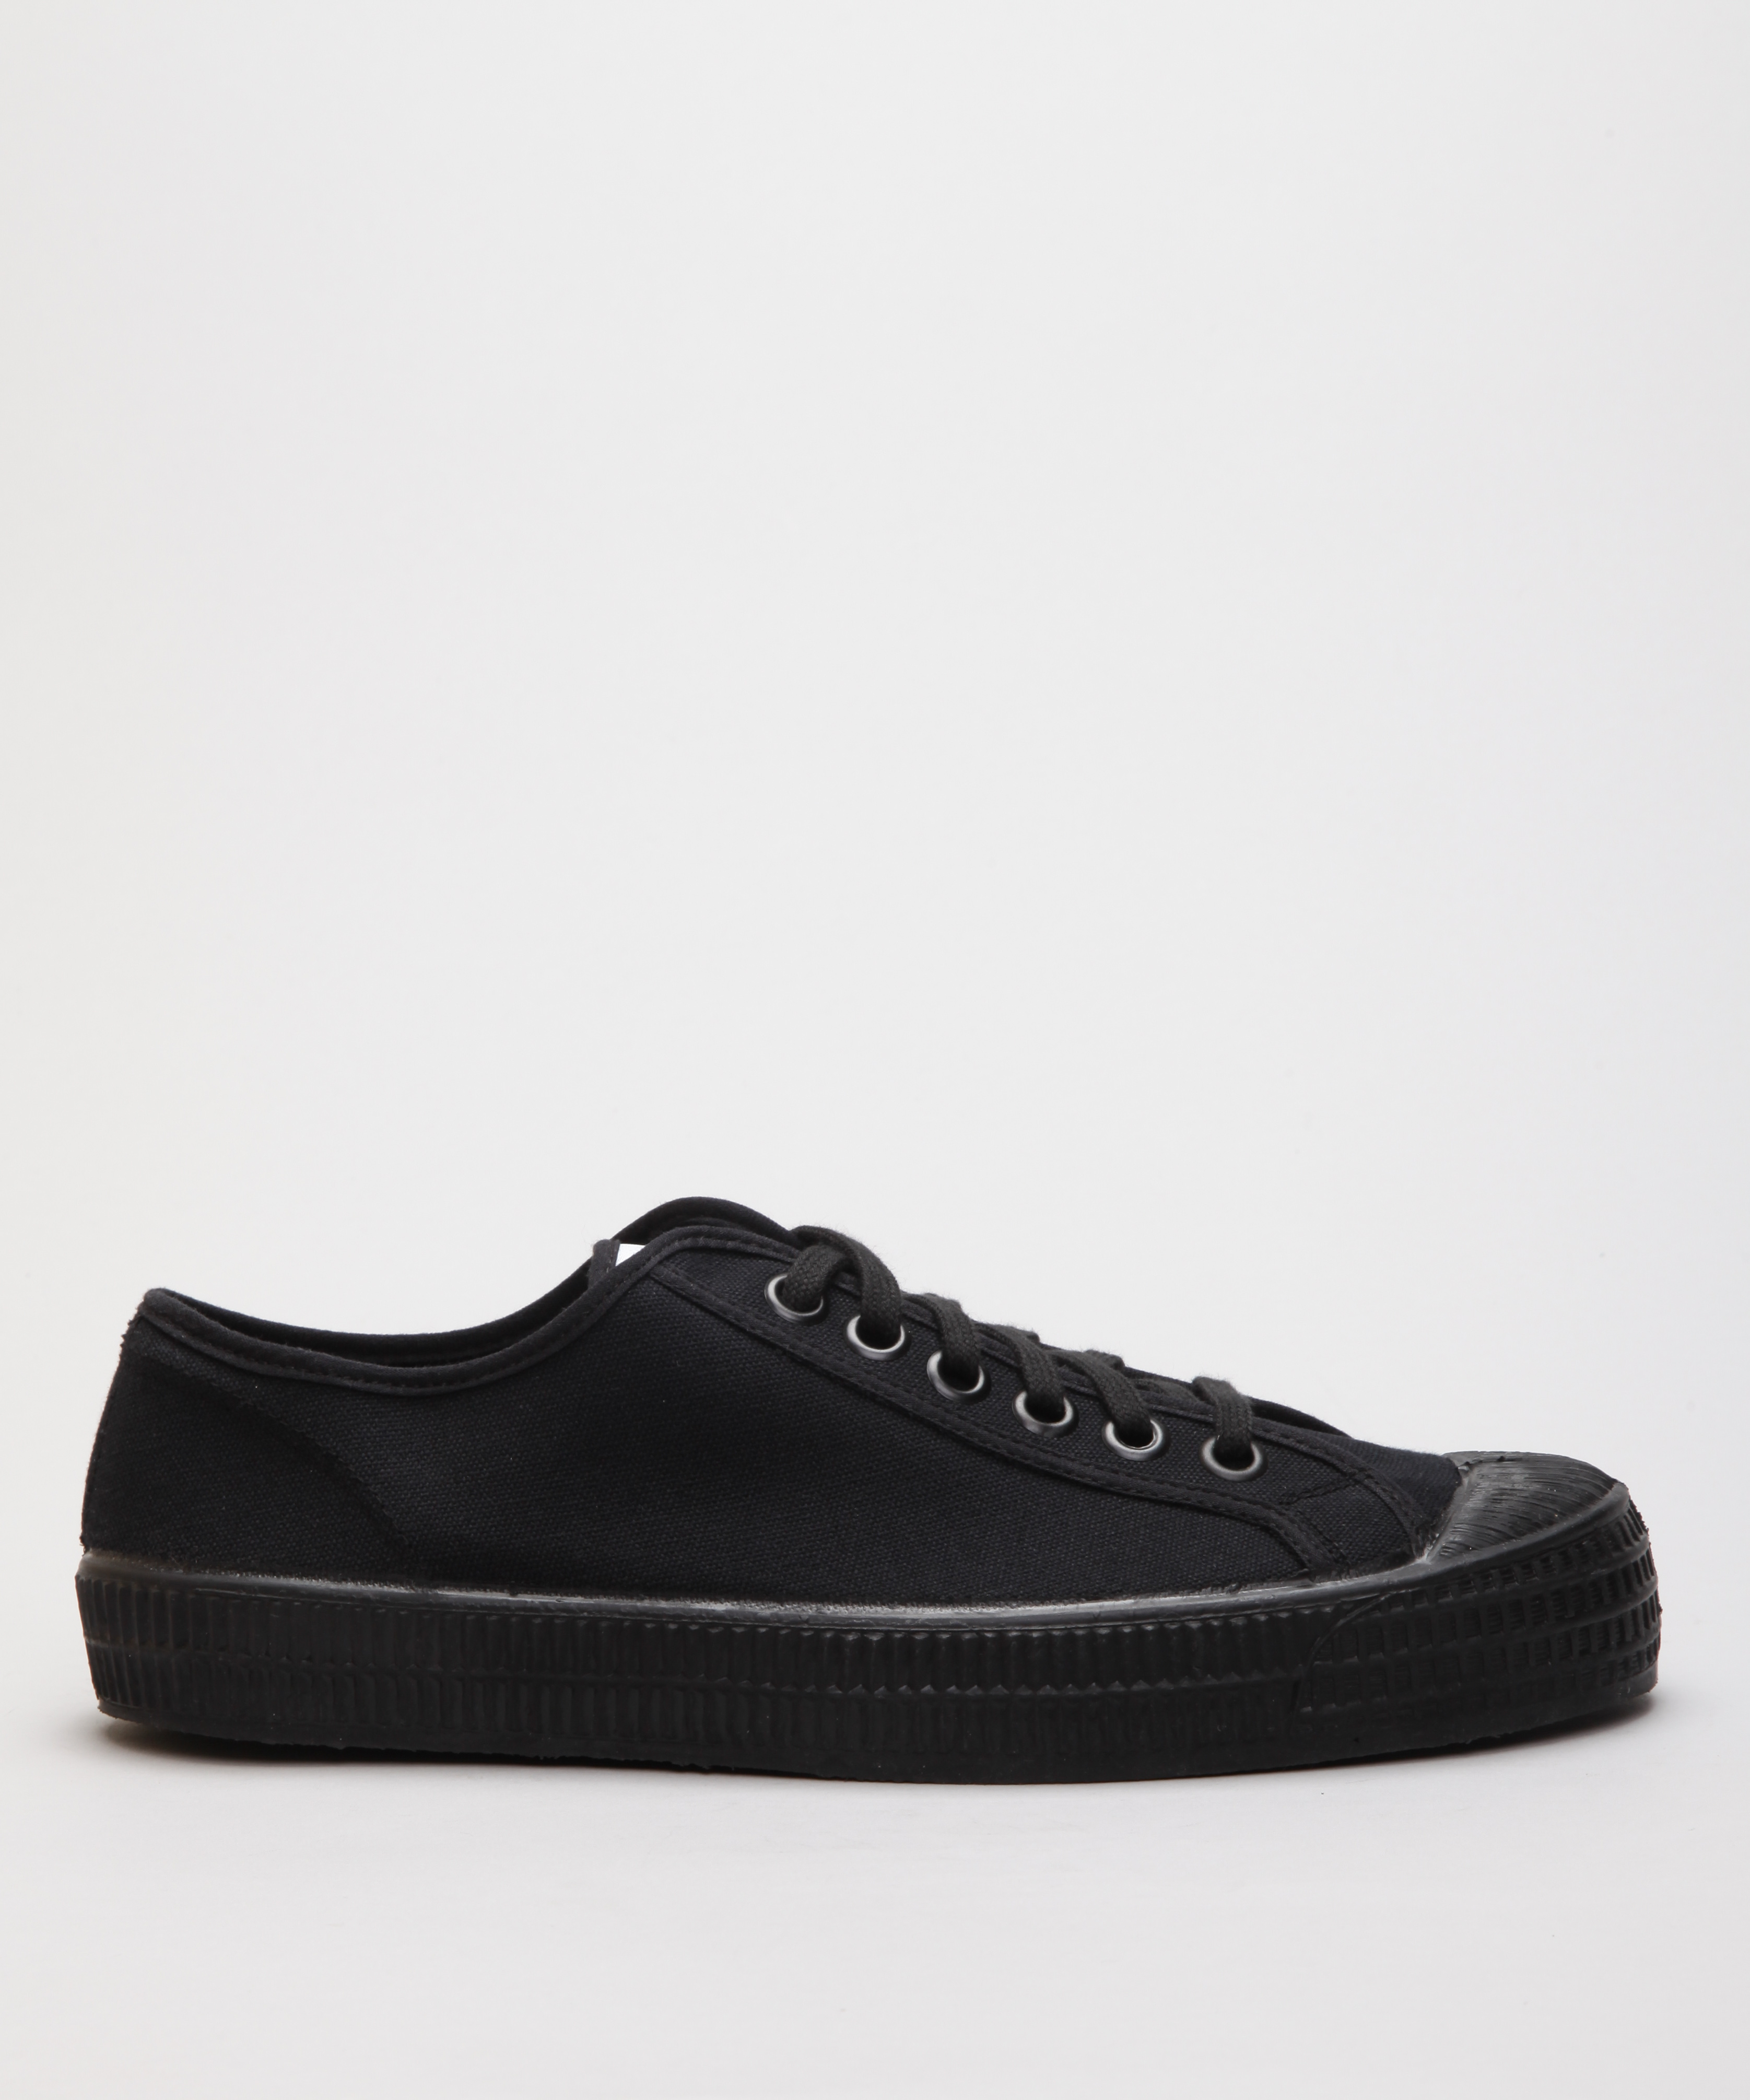 Novesta Star Master Black Shoes - Shoes Online - Lester Store